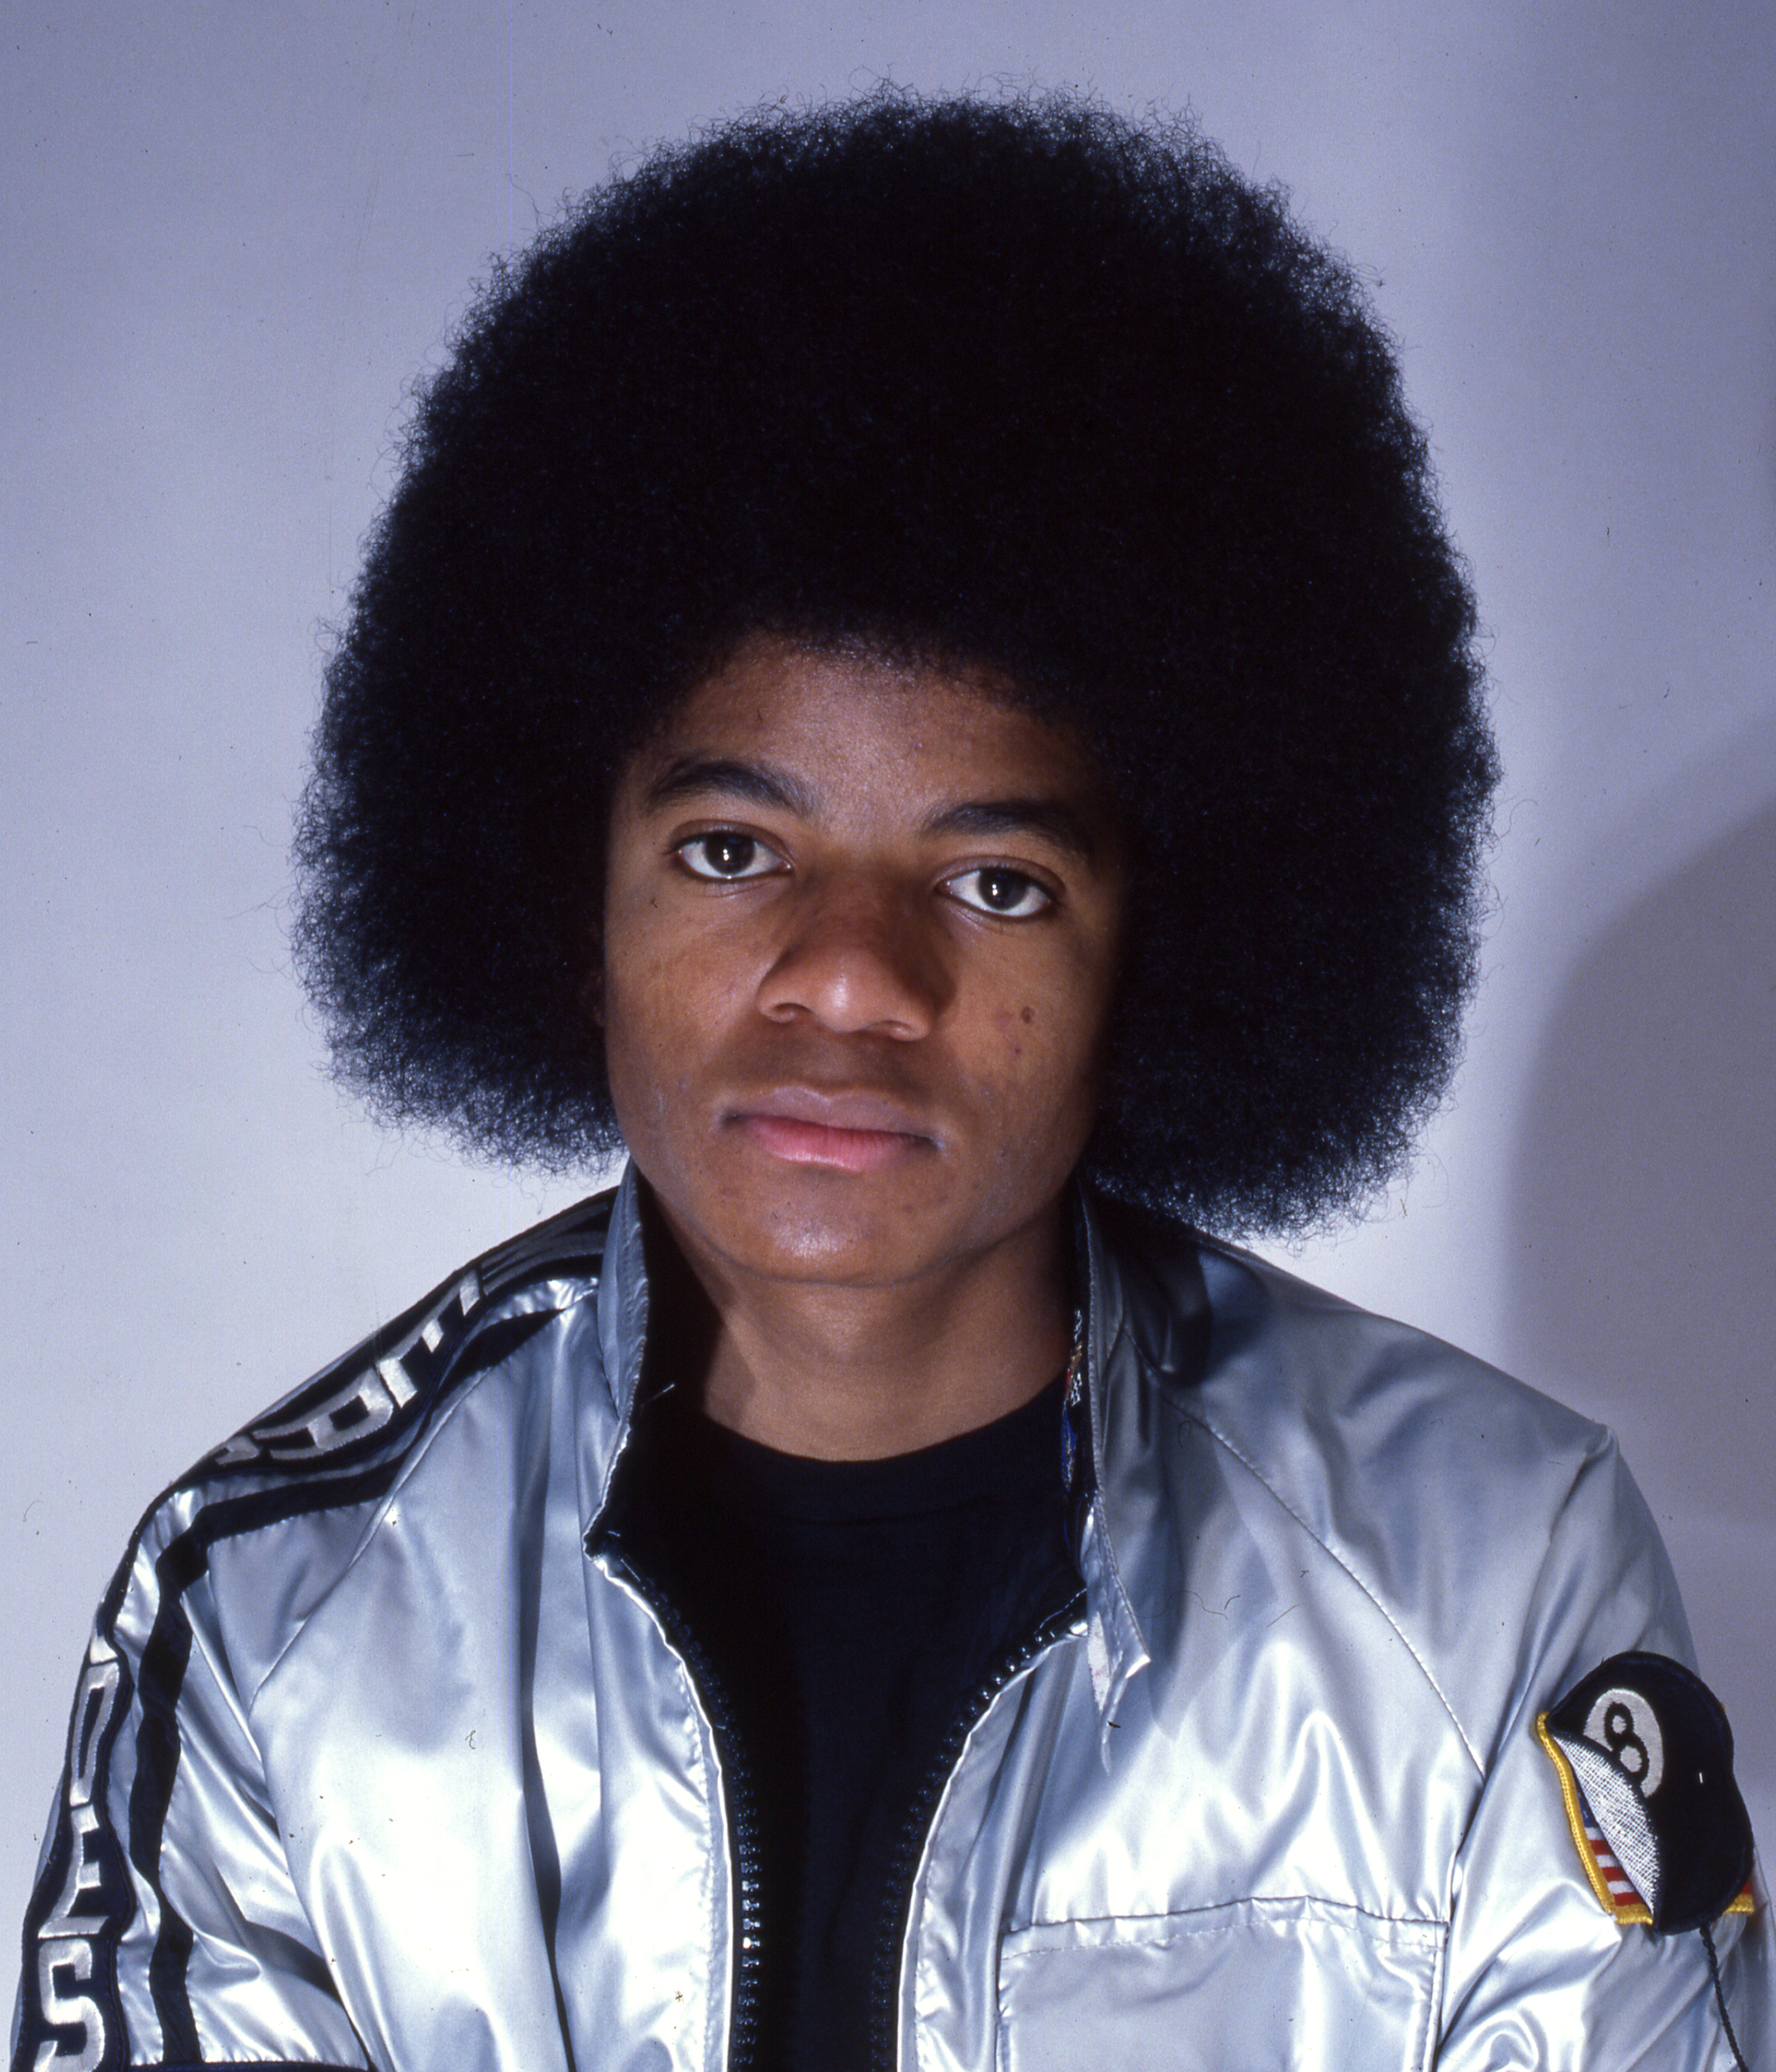 Michael Jackson en 1977 | Source : Getty Images